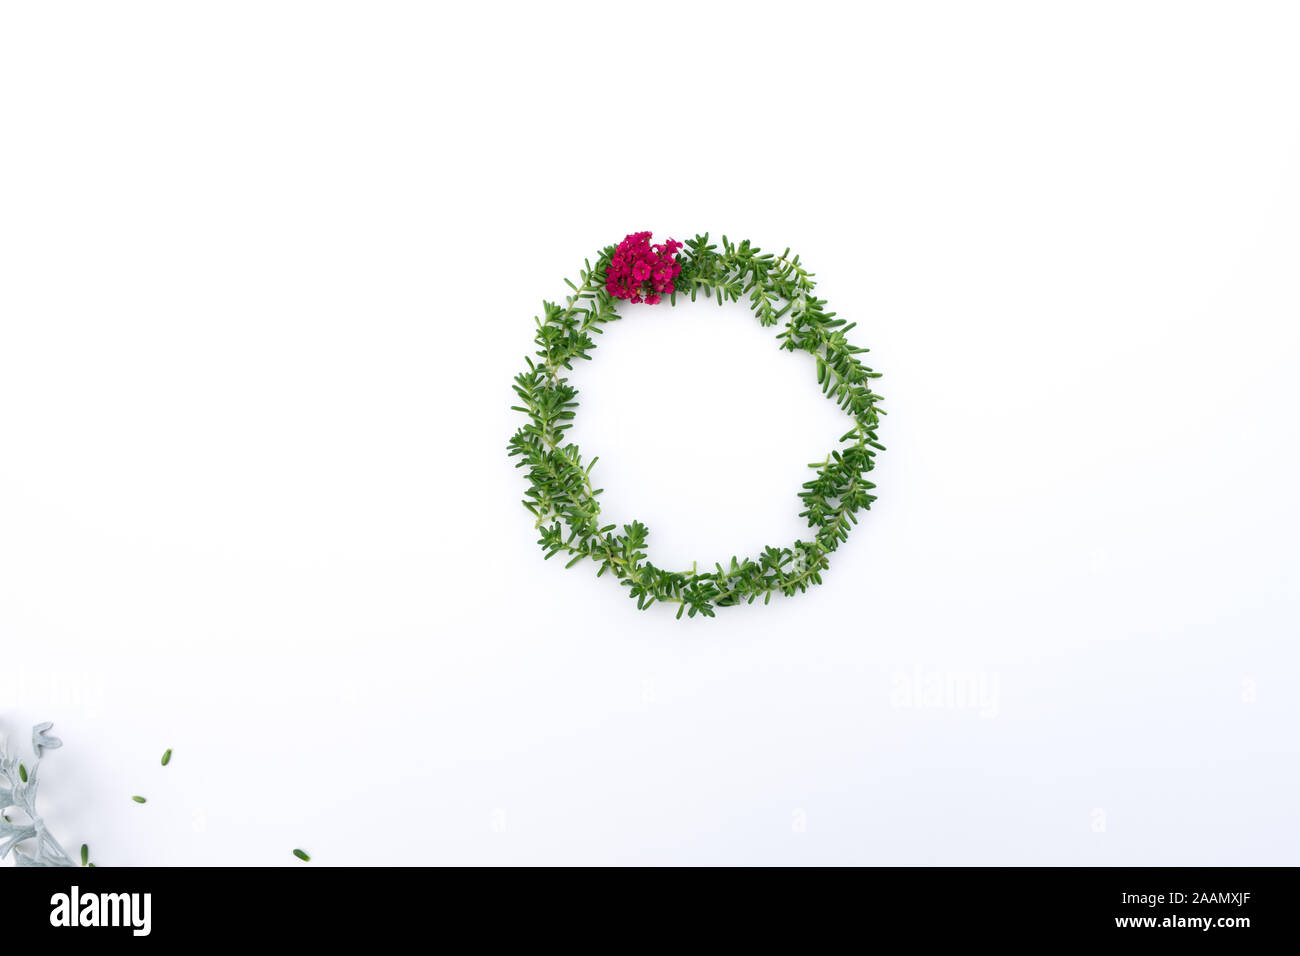 Abstract ghirlanda di Natale con succulente e red yarrow minimalista su sfondo bianco, creative flatlay, concettuale, camera per copiare, vista da sopra Foto Stock